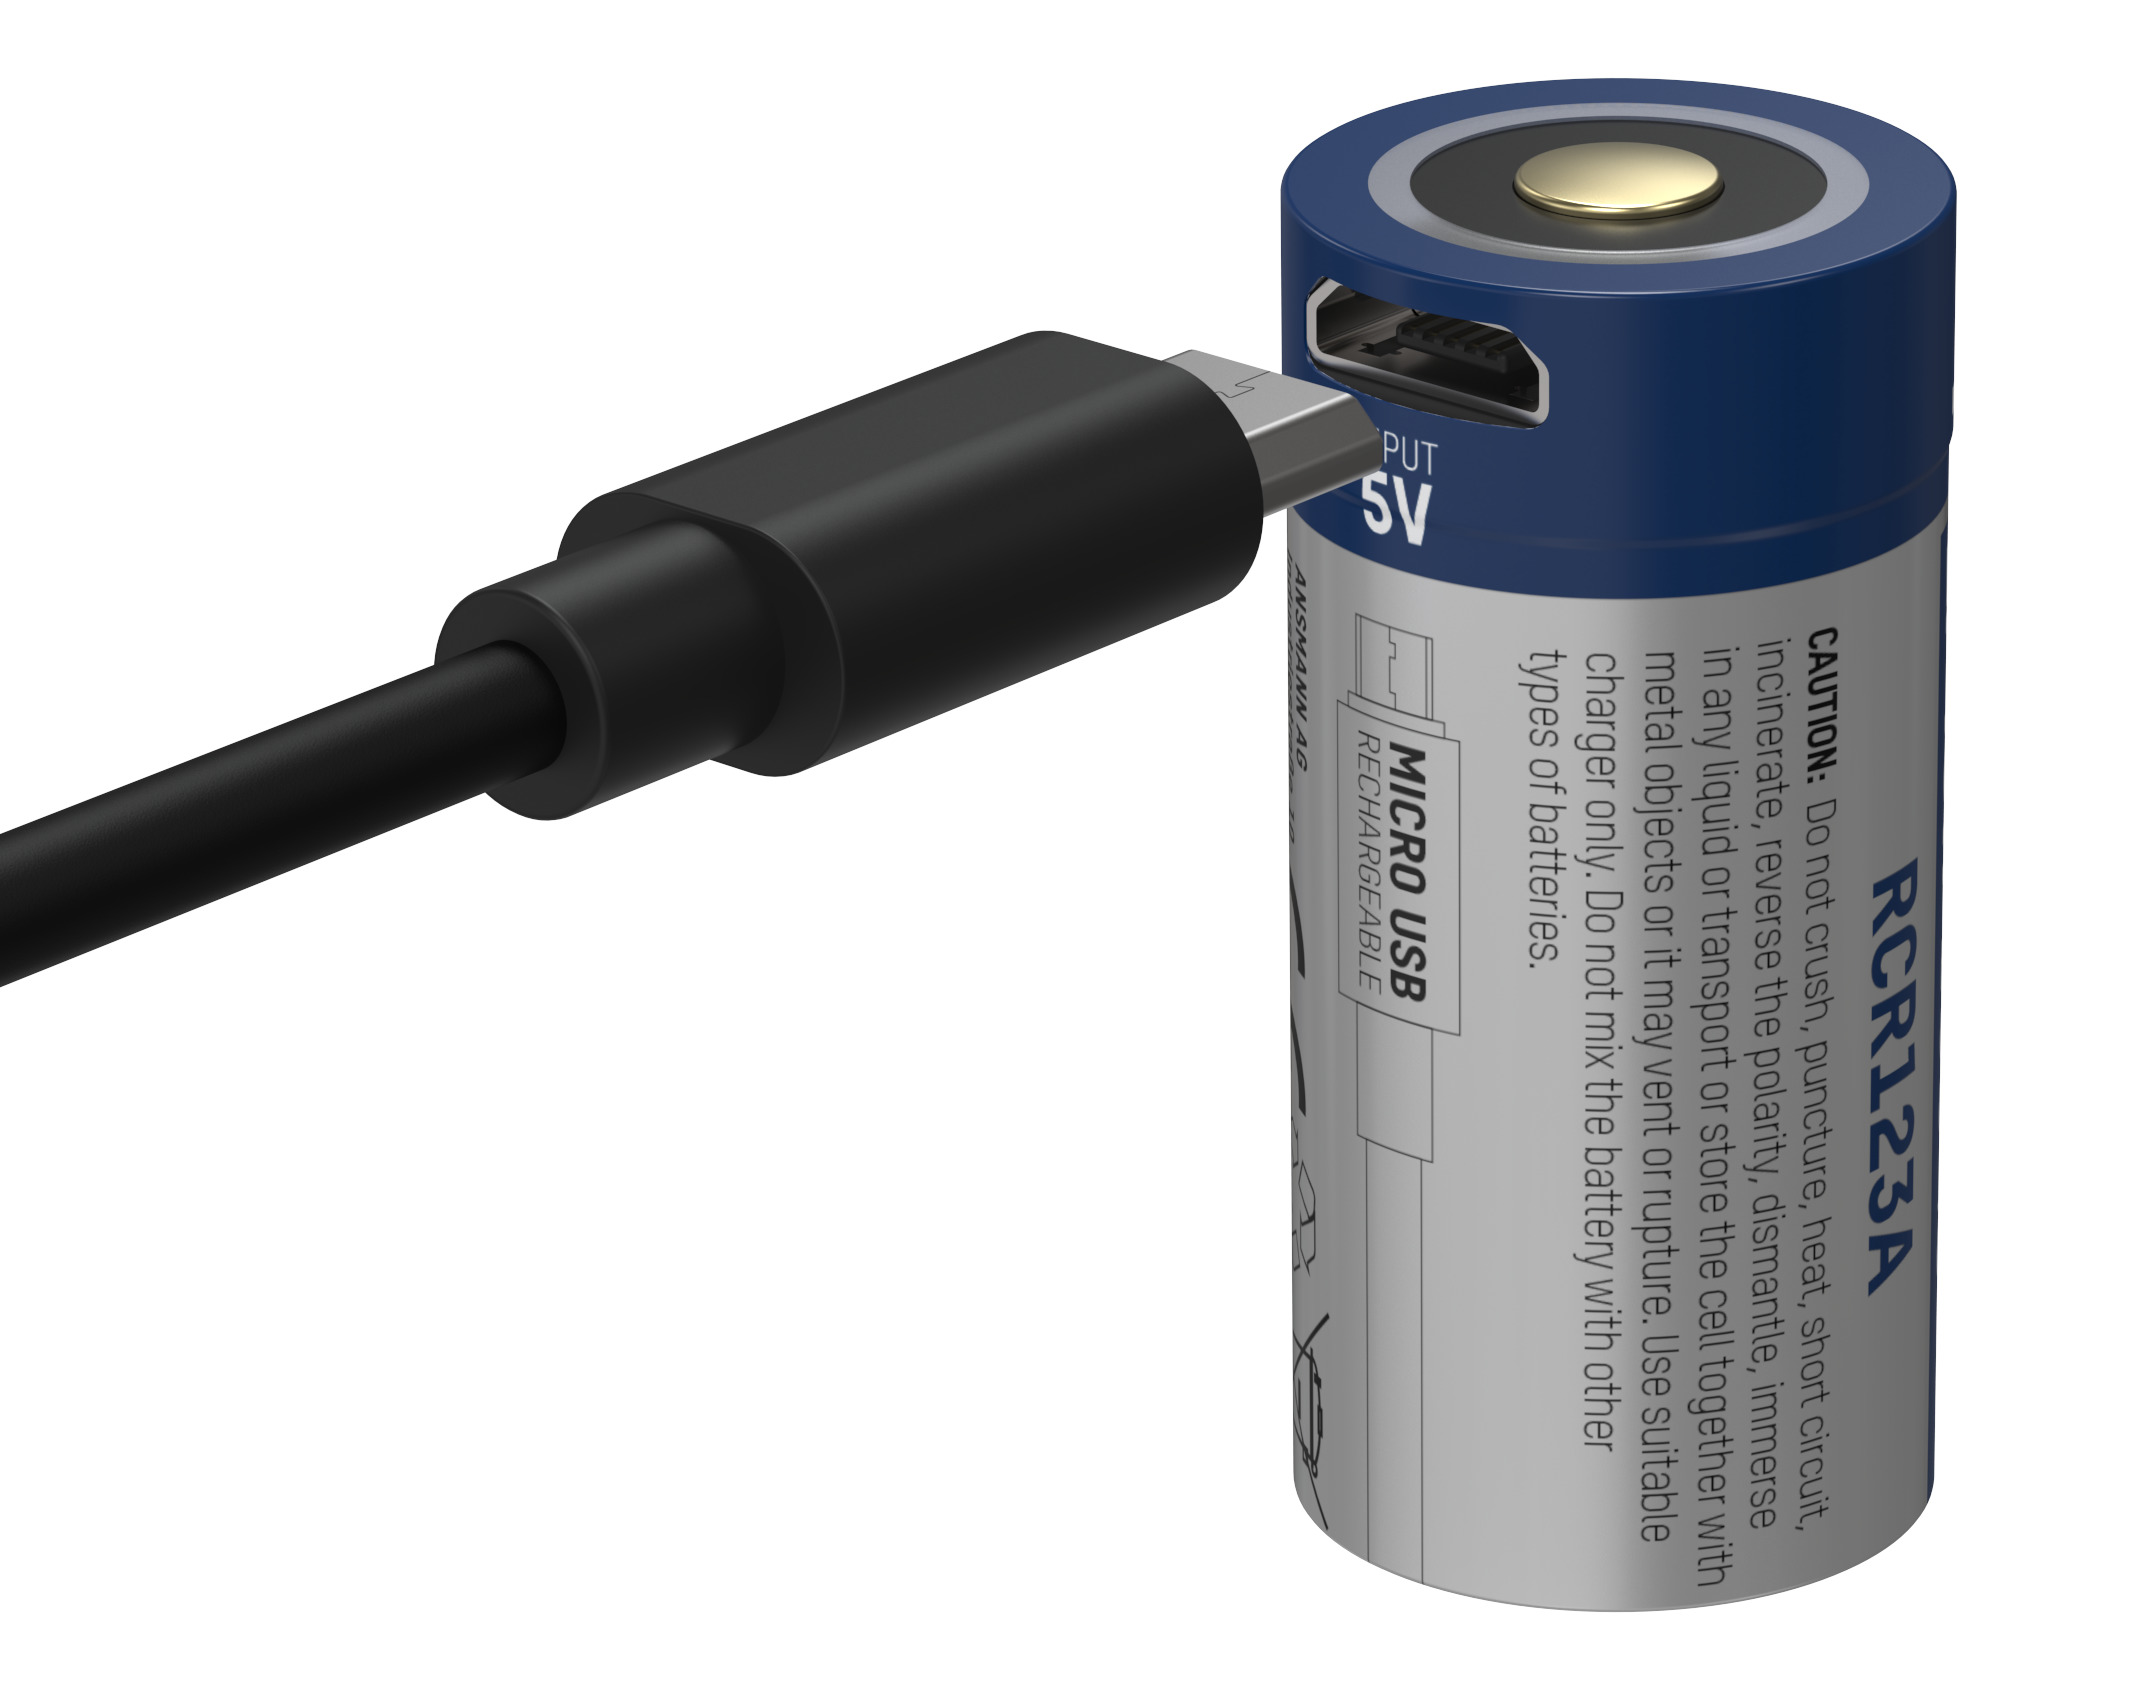 Ansmann Batterie au lithium CR123A avec connexion micro-USB pour un  rechargement pratique chez Selva Online